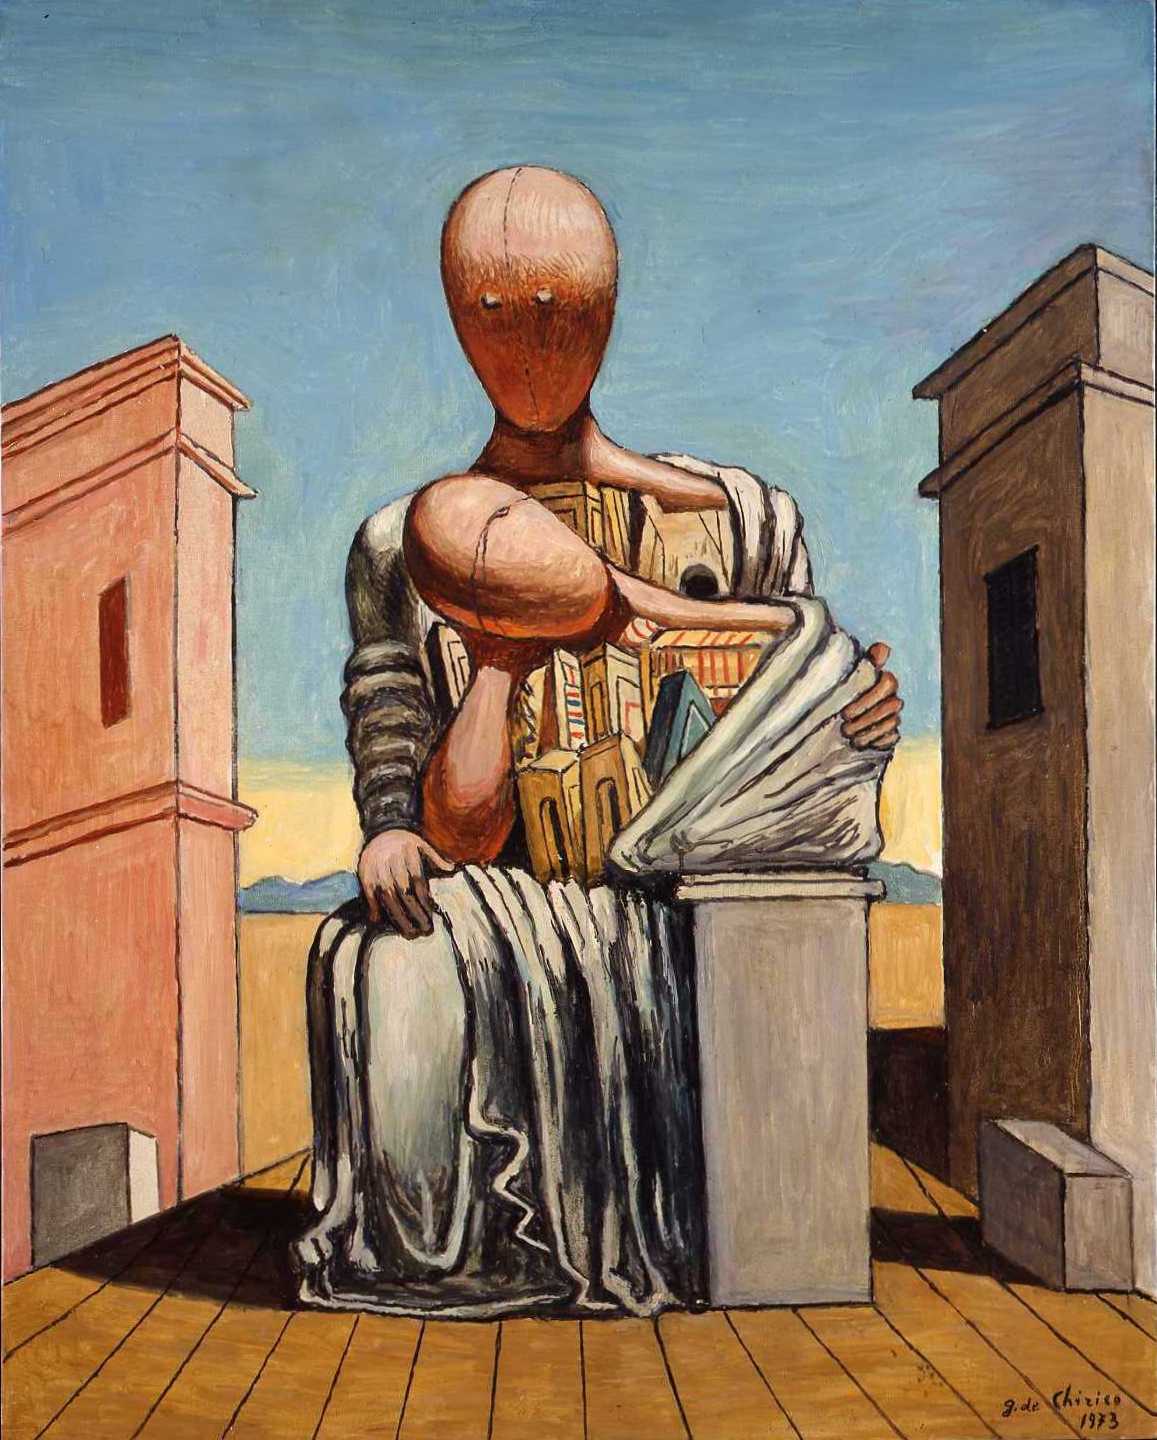 Πίνακας του Τζόρτζο ντε Κίρικο. Giorgio de Chirico (10 Ιουλίου 1888 - 20 Νοεμβρίου 1978.) 